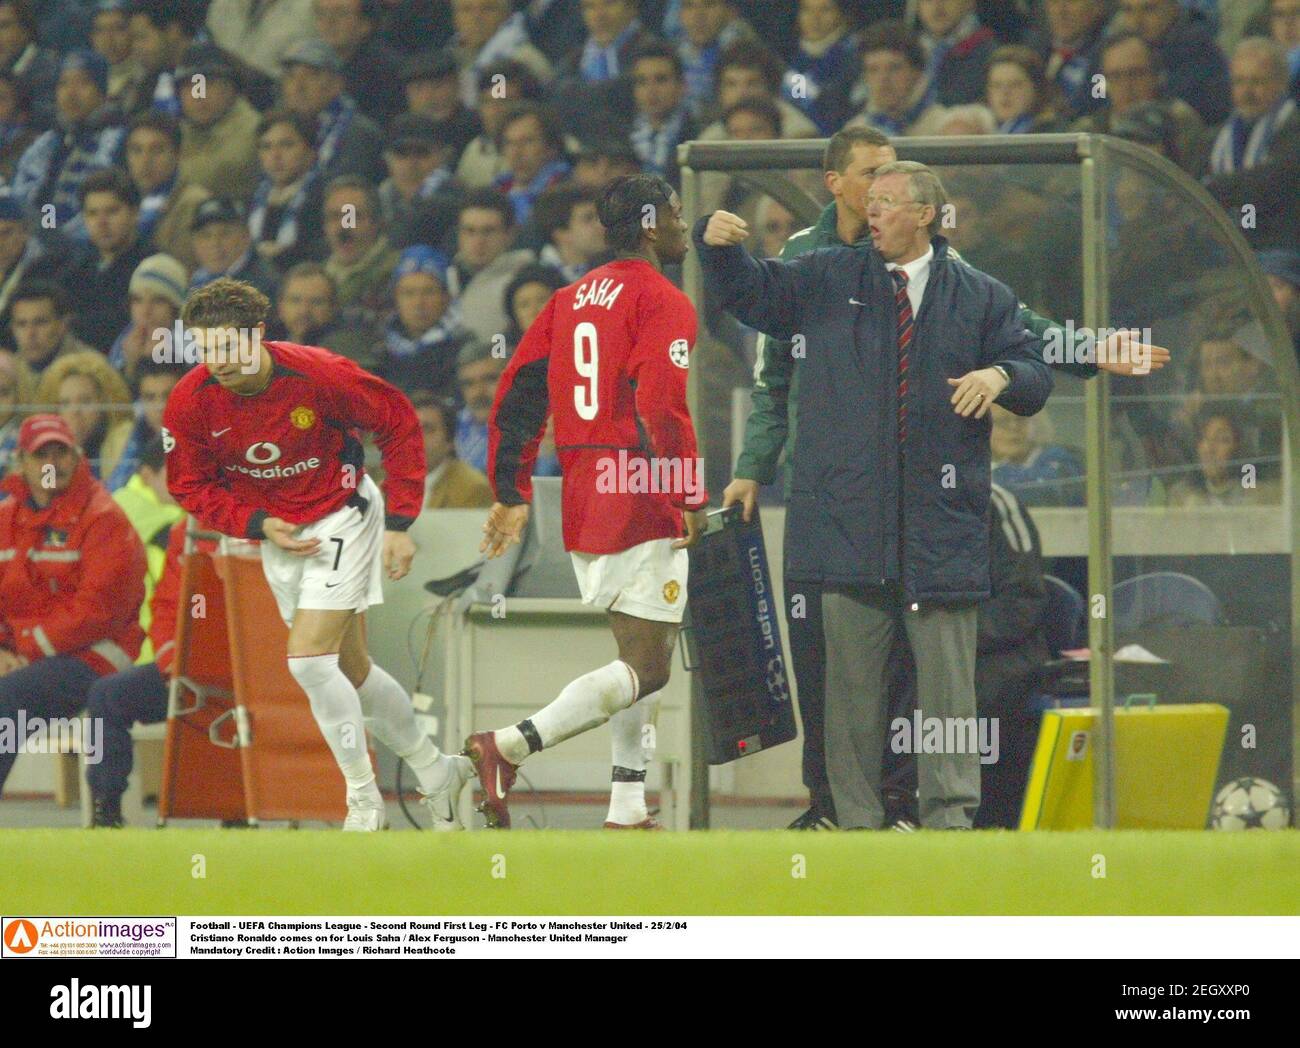 Football - Ligue des champions de l'UEFA - deuxième manche première étape -  FC Porto v Manchester United - 25/2/04 Cristiano Ronaldo vient pour Louis  Saha / Alex Ferguson - Manchester United